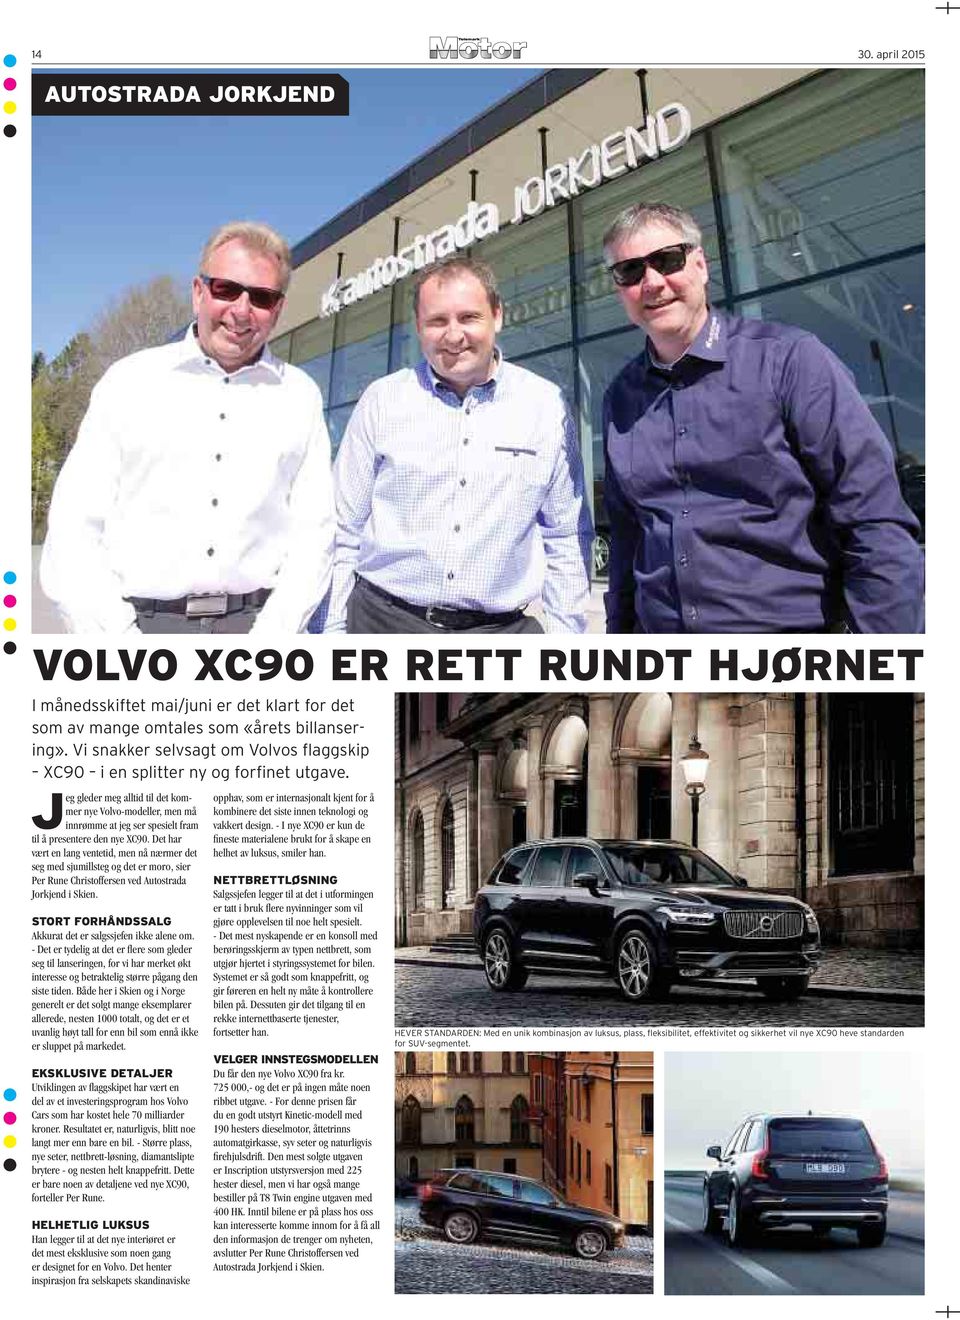 Jeg gleder meg alltid til det kommer nye Volvo-modeller, men må innrømme at jeg ser spesielt fram til å presentere den nye XC90.